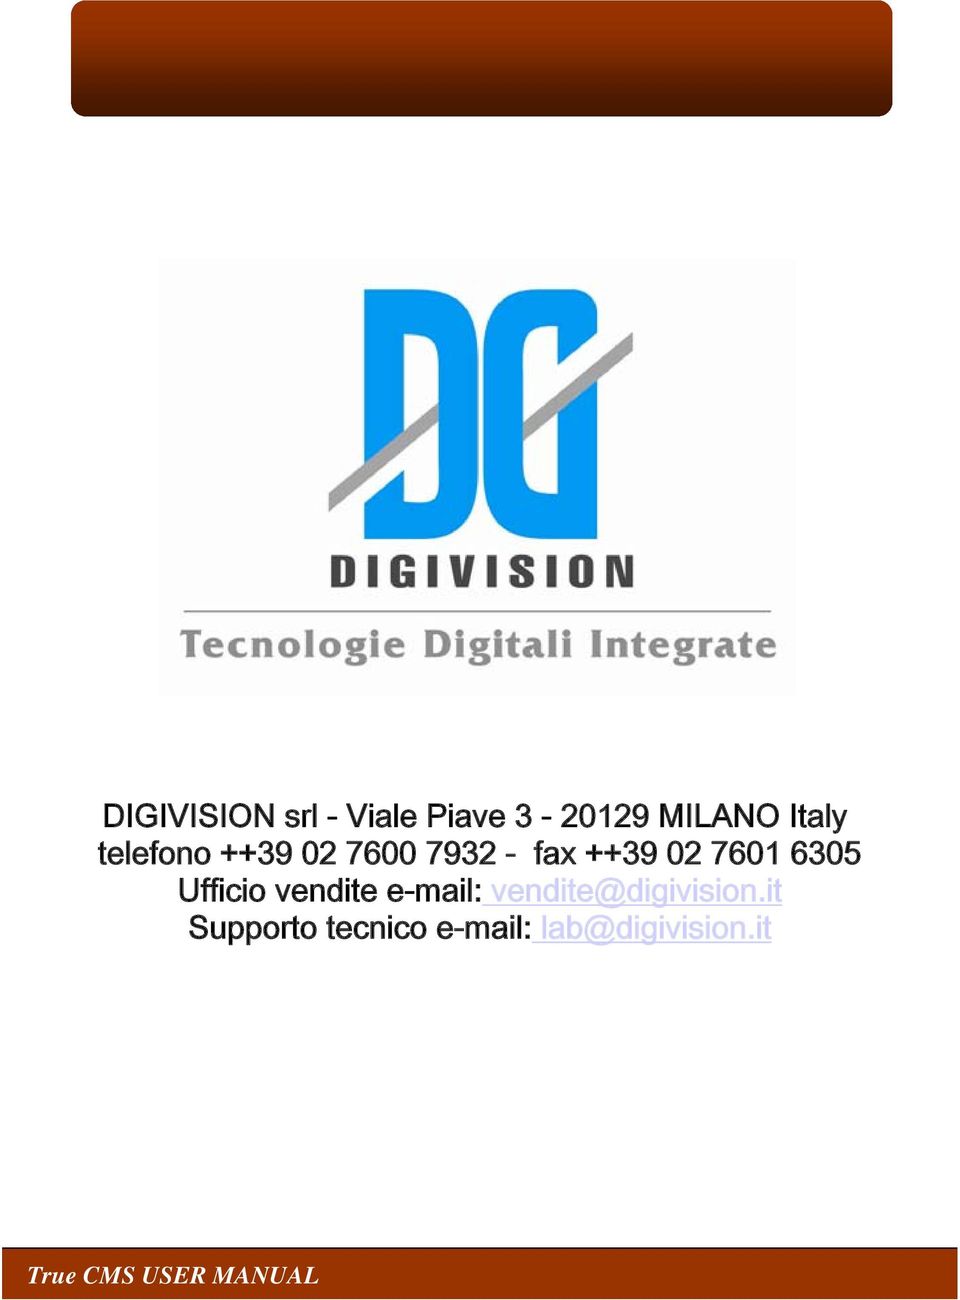 Ufficio vendite e-mail: vendite@digivision.